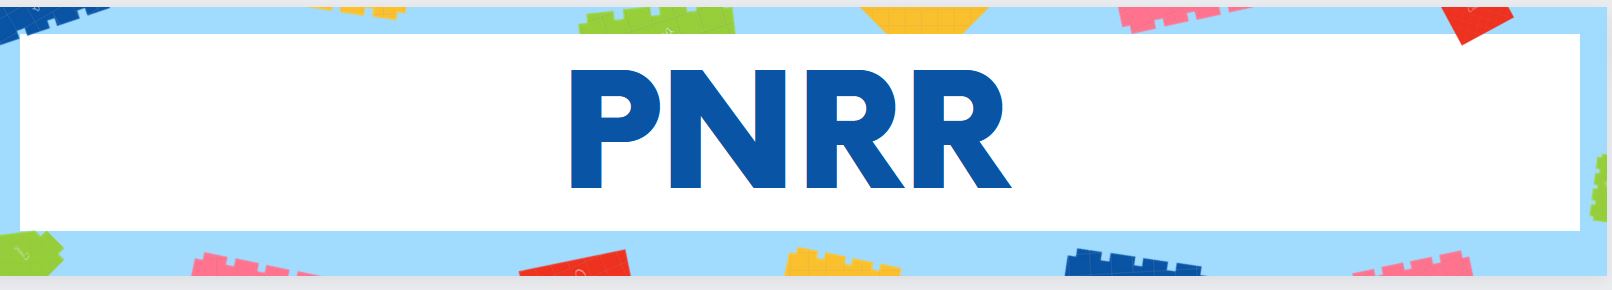 banner PNRR.JPG